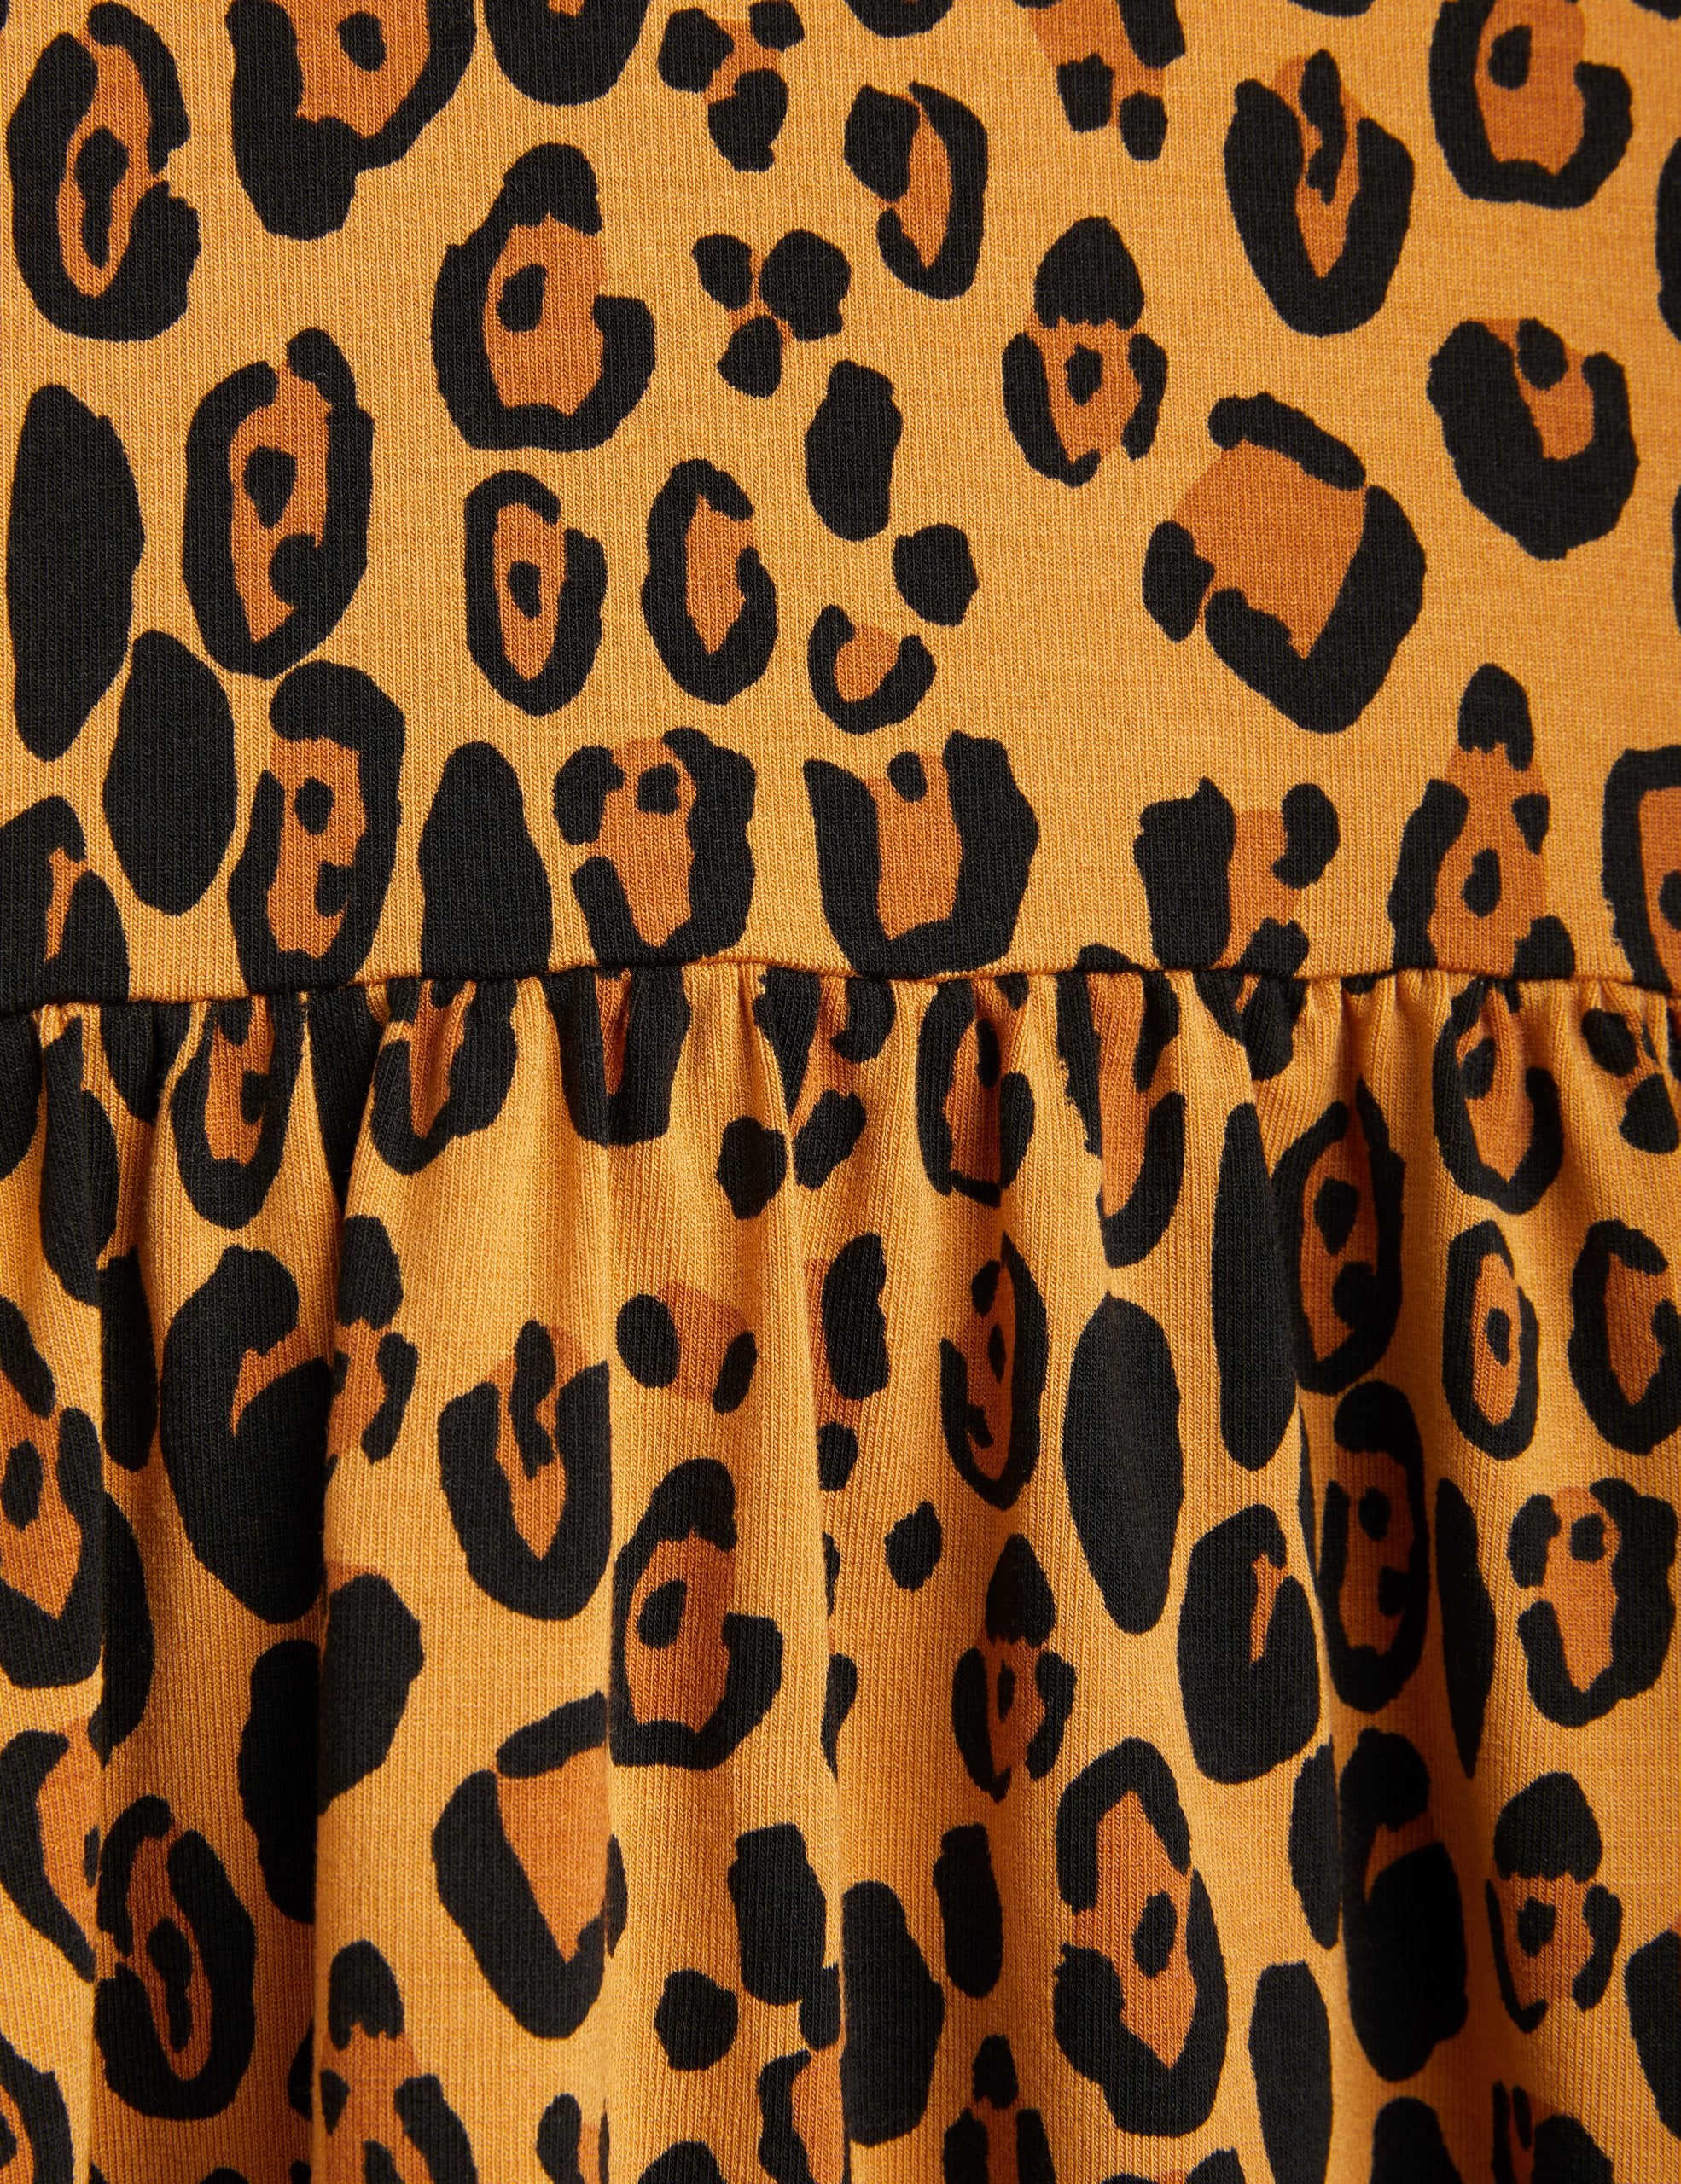 NEW Mini Rodini | Basic leopard ss dress